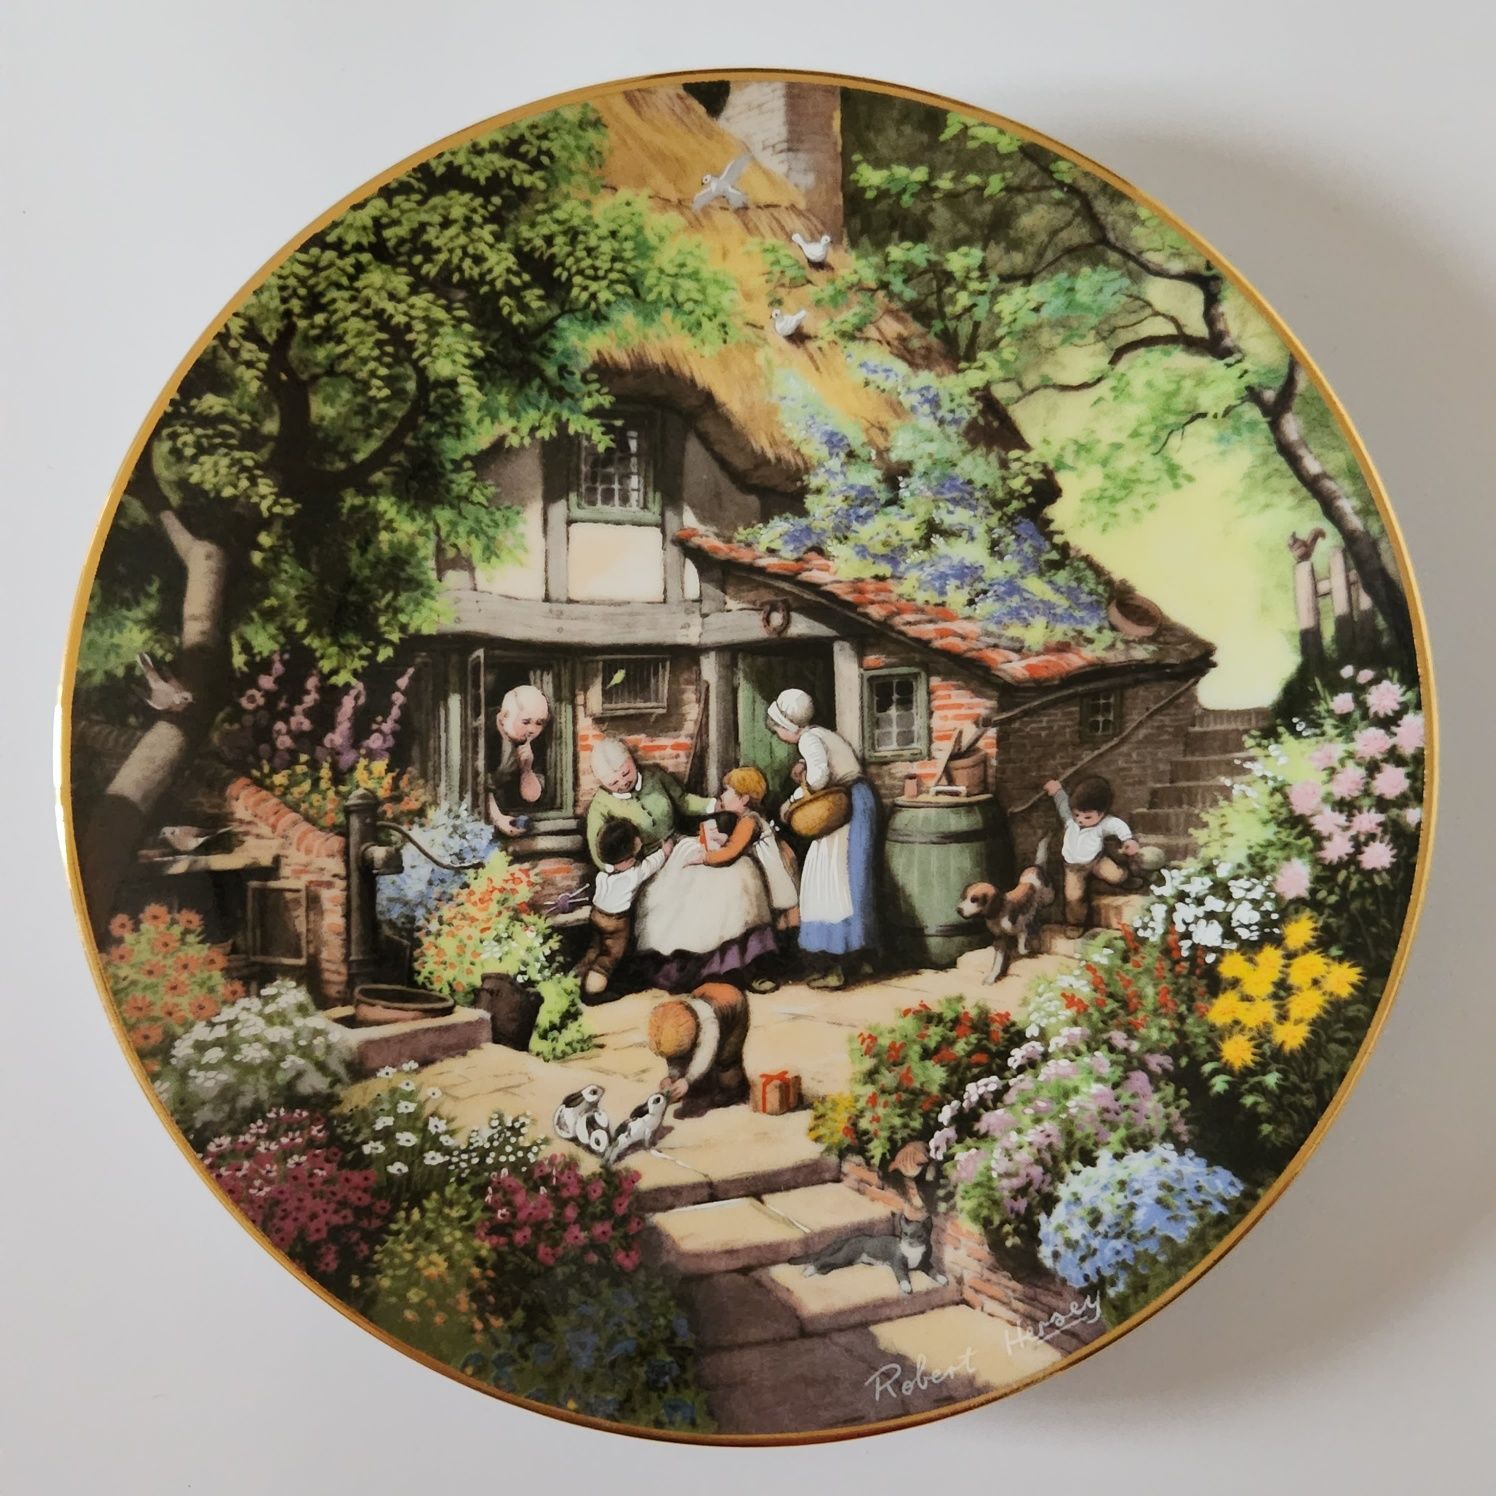 Коллекційні декоративні тарілки from "The Victorian garden" by Robert